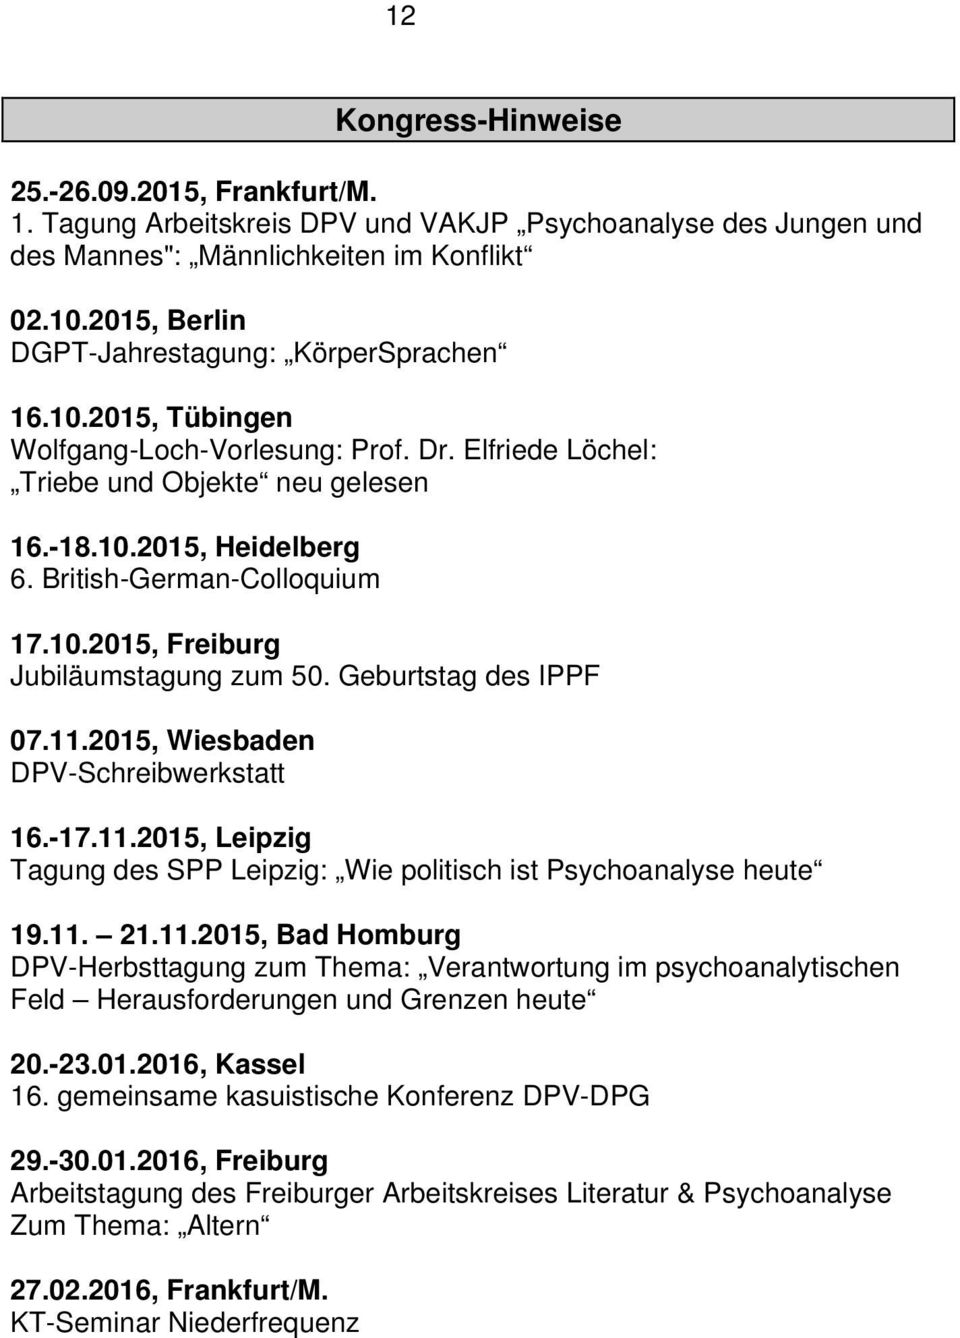 British-German-Colloquium 17.10.2015, Freiburg Jubiläumstagung zum 50. Geburtstag des IPPF 07.11.2015, Wiesbaden DPV-Schreibwerkstatt 16.-17.11.2015, Leipzig Tagung des SPP Leipzig: Wie politisch ist Psychoanalyse heute 19.